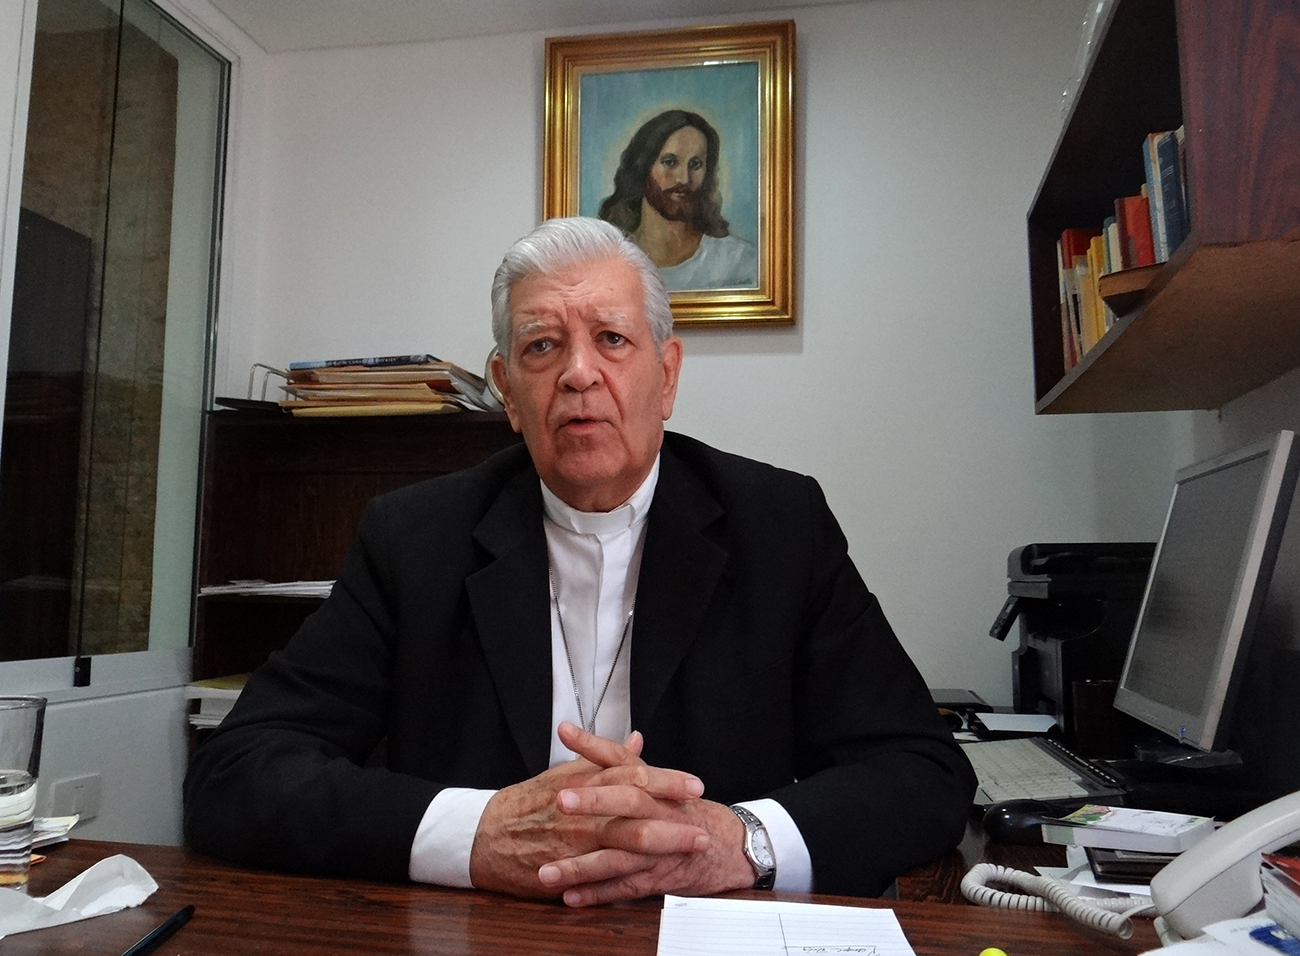 Cardenal Jorge Urosa Savino en delicado estado de salud, según vicario de la Arquidiócesis (Comunicado)